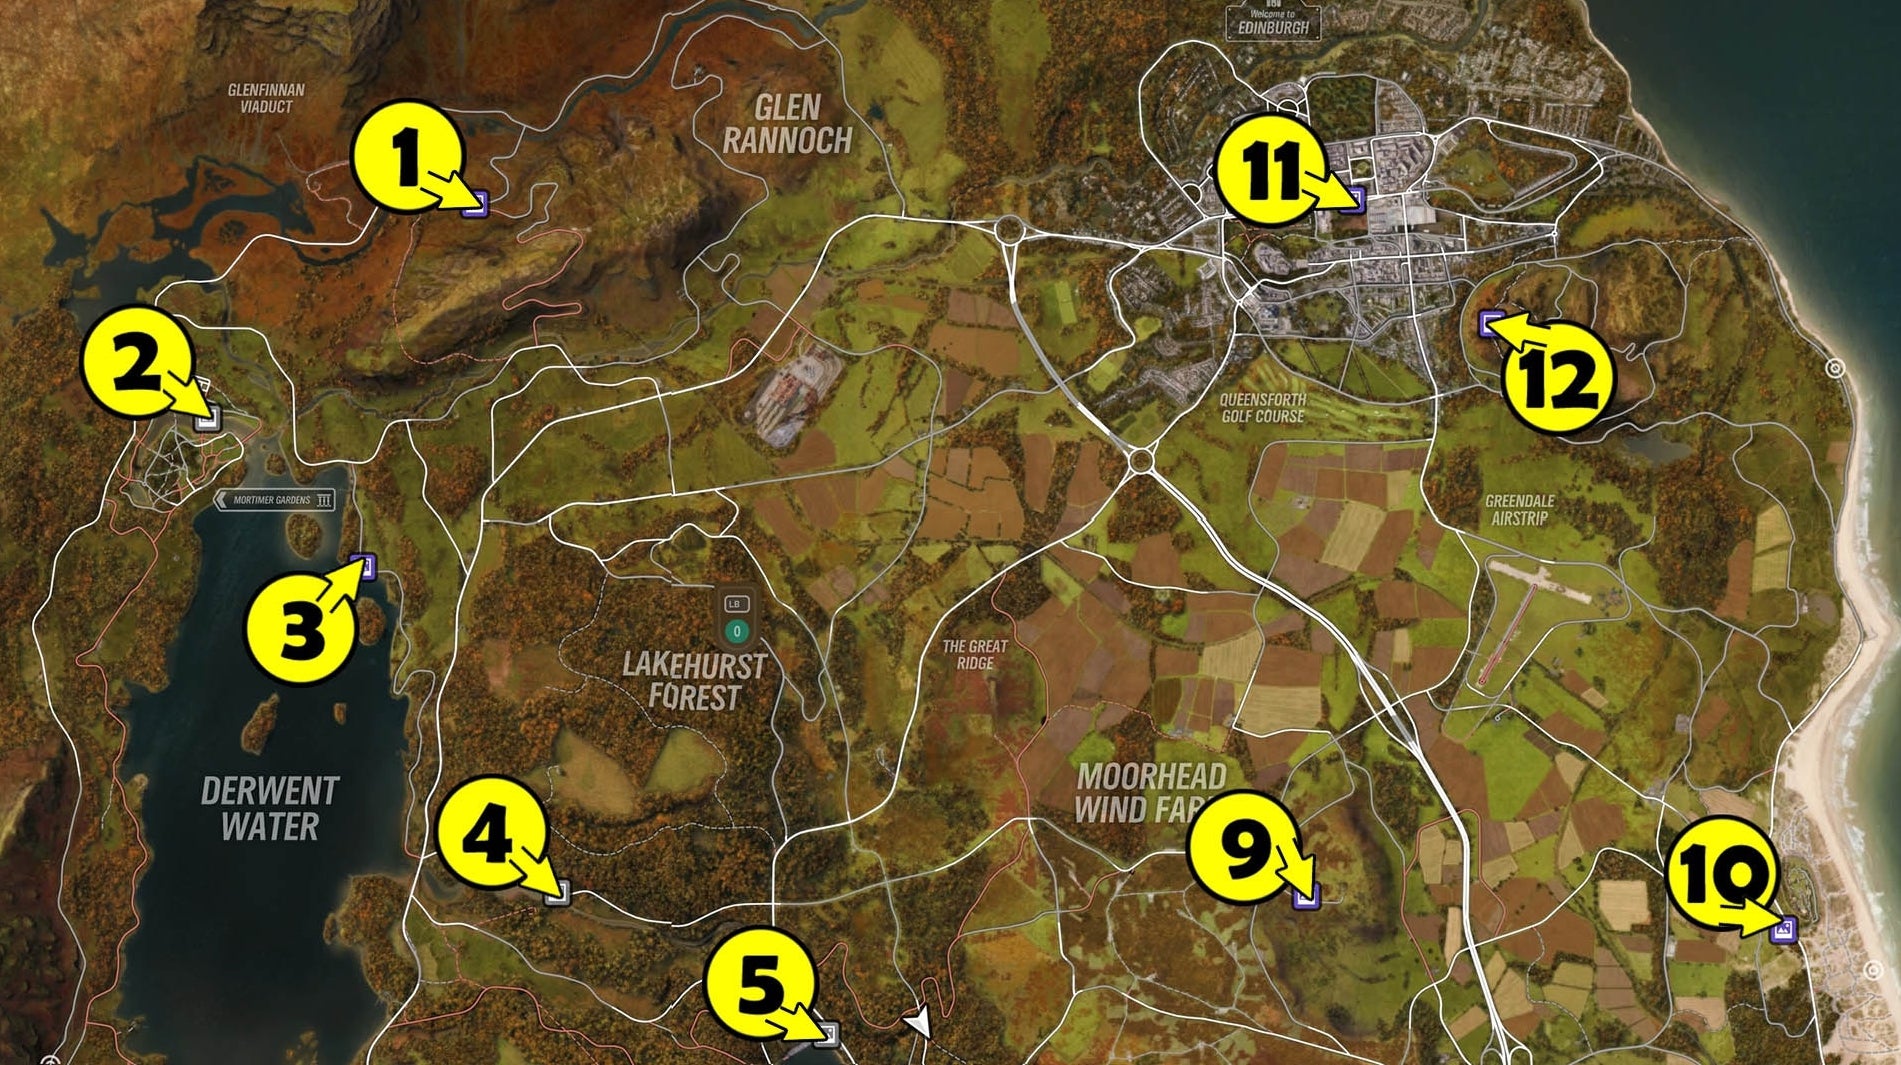 Obrazki dla Forza Horizon 4 - tablice premiowe, punkty widokowe: wszystkie znajdźki (mapy)